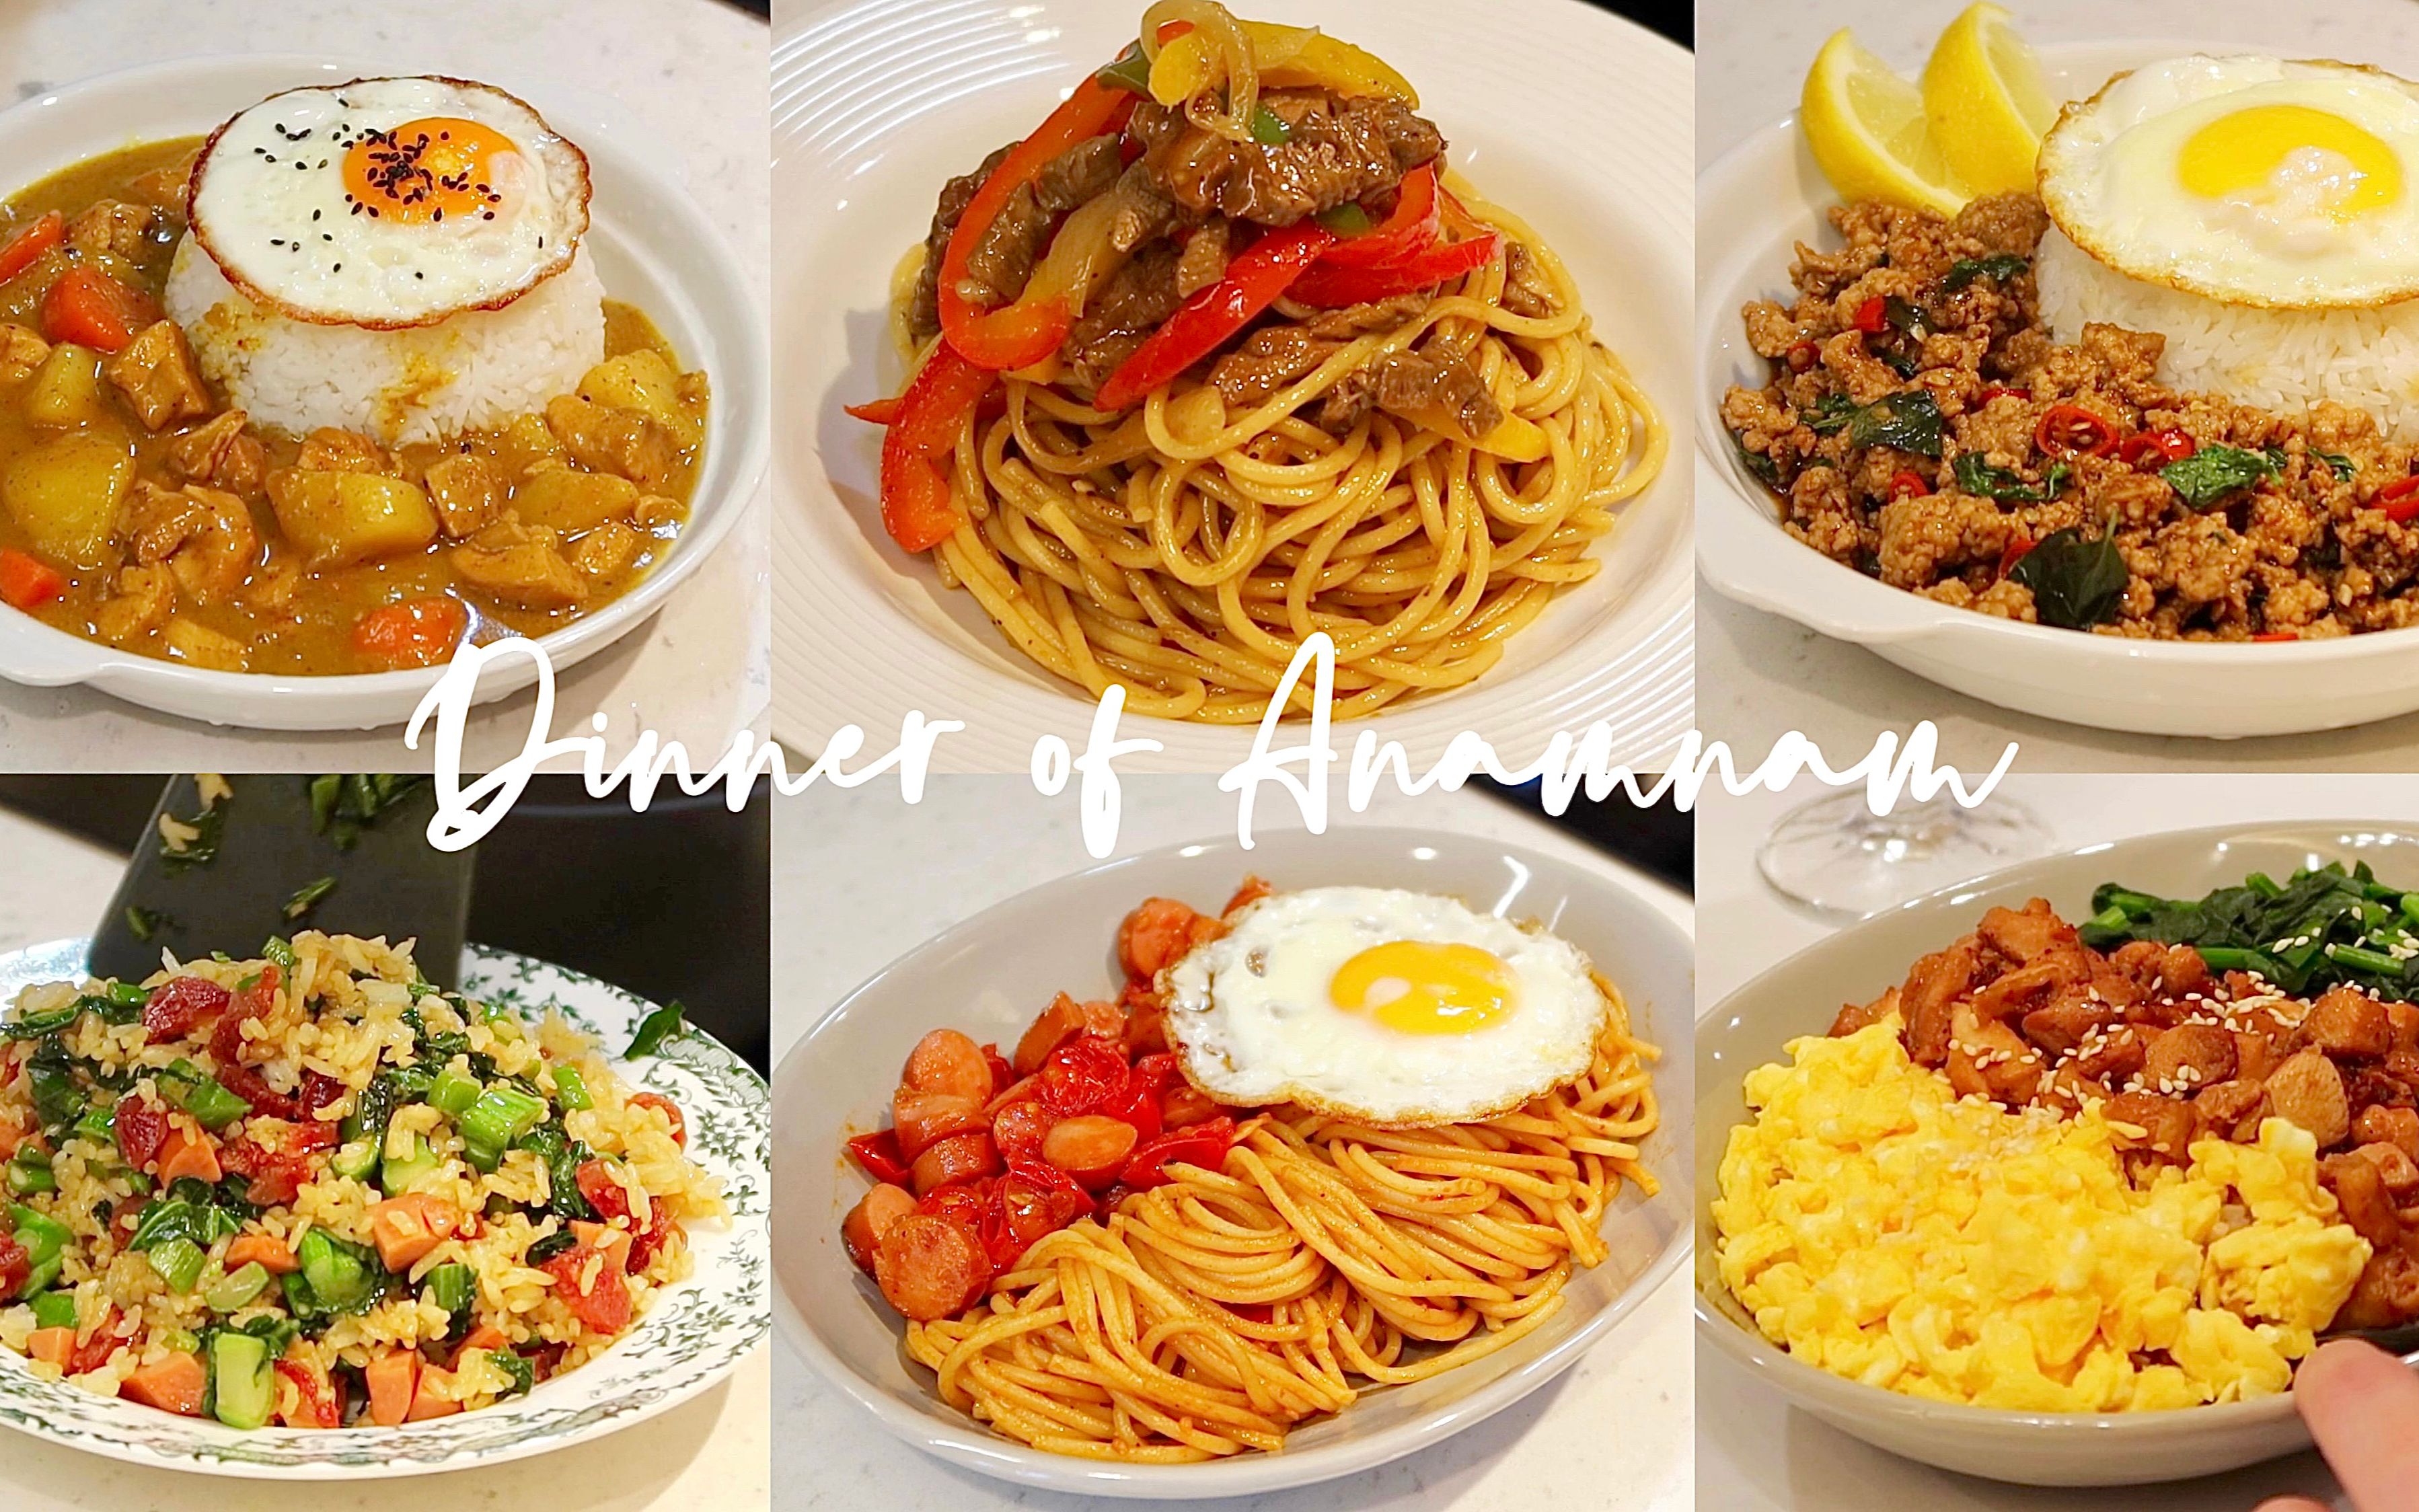 Nam Vlog丨一周晚餐吃什么·用《孤独的美食家》开启一周晚餐食谱·咖喱鸡肉饭·两种意面做法·打抛肉盖饭·剩米饭处理妙招·独居干饭日常